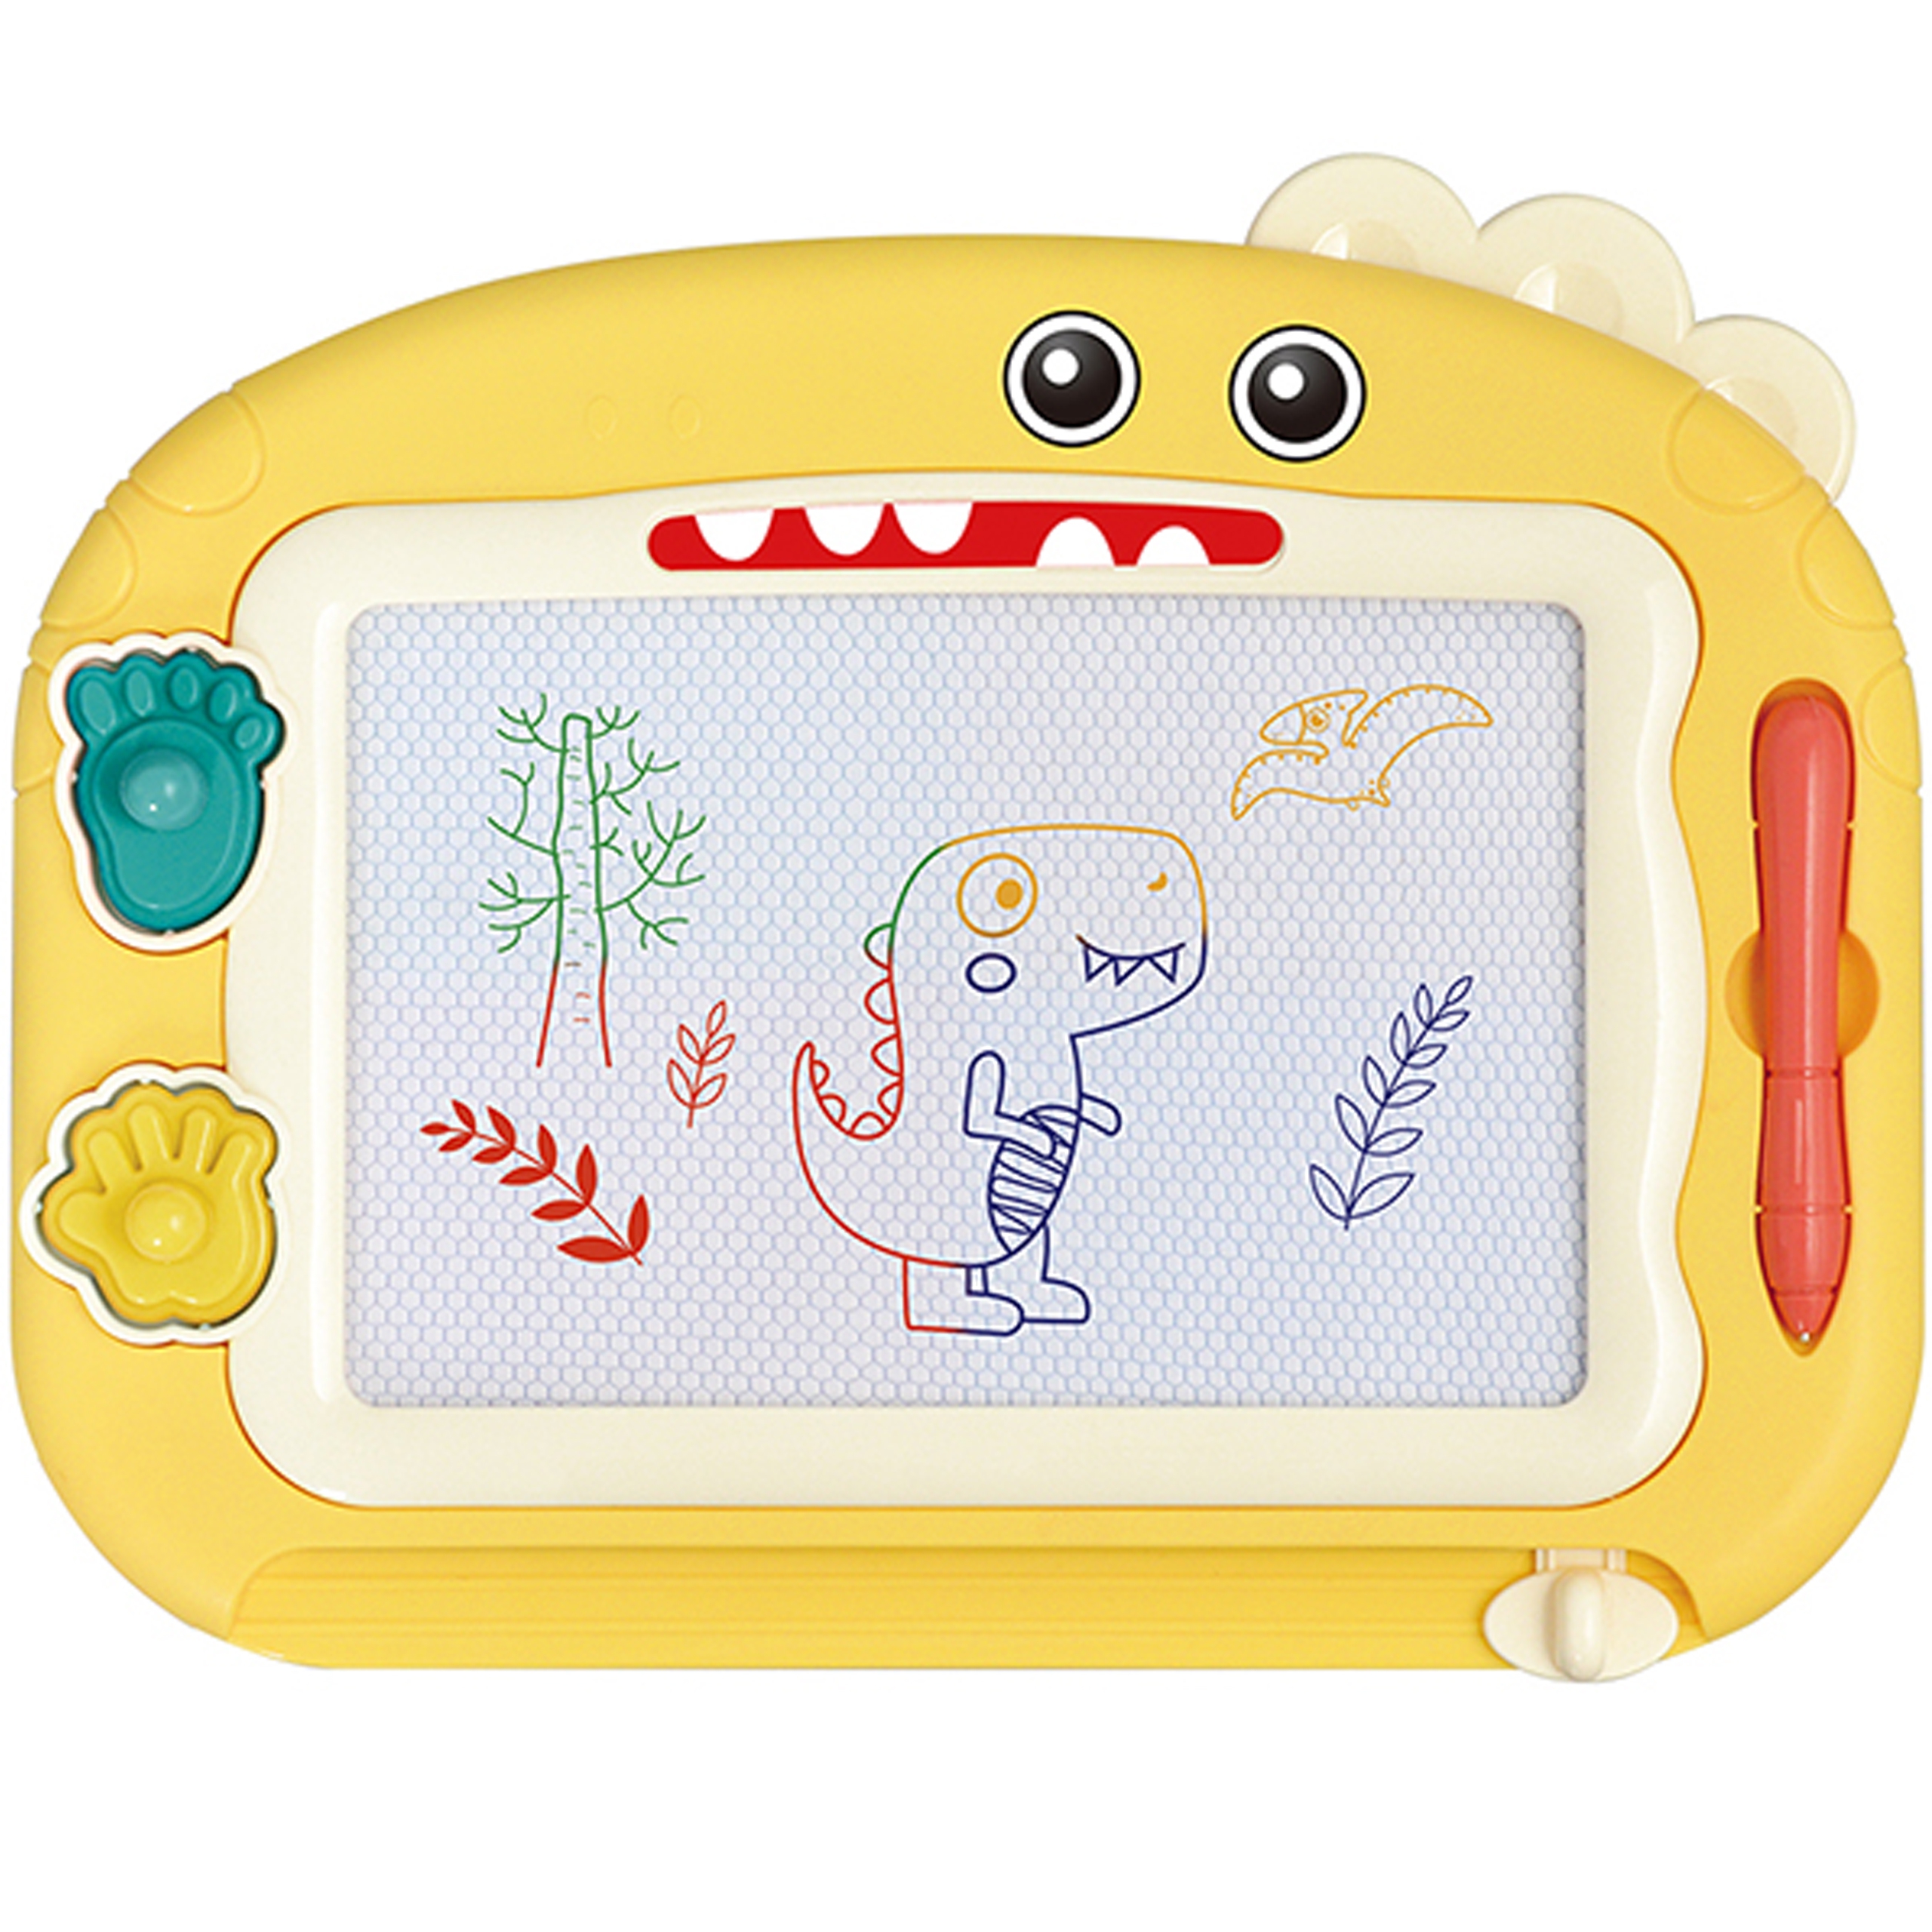 Znikopis tablica magnetyczna kolorowa + 2 STEMpelki dinozaur, zabawka dla dzieci, Woopie